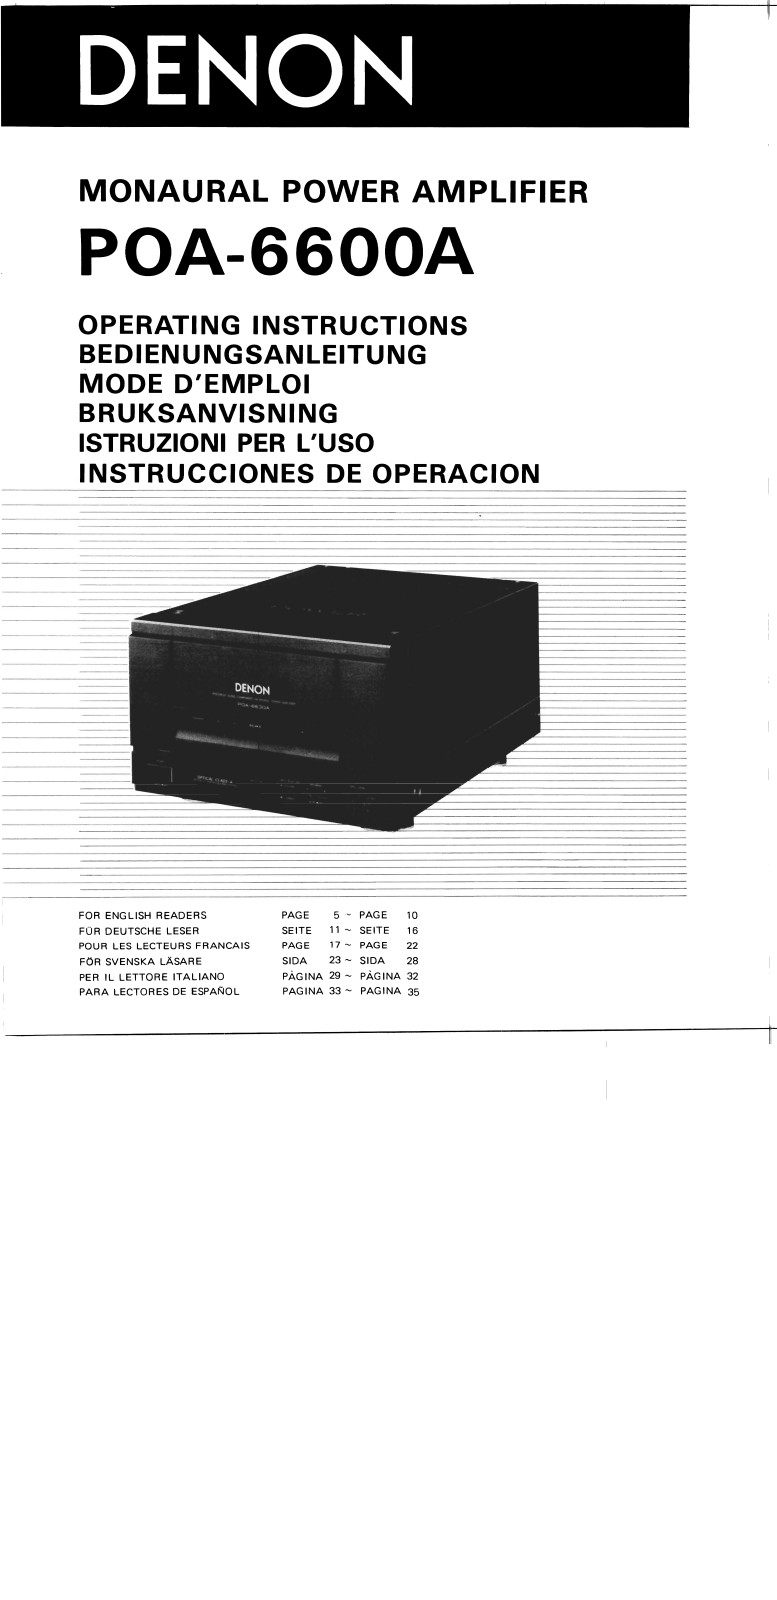 Denon POA-6600A Owner's Manual